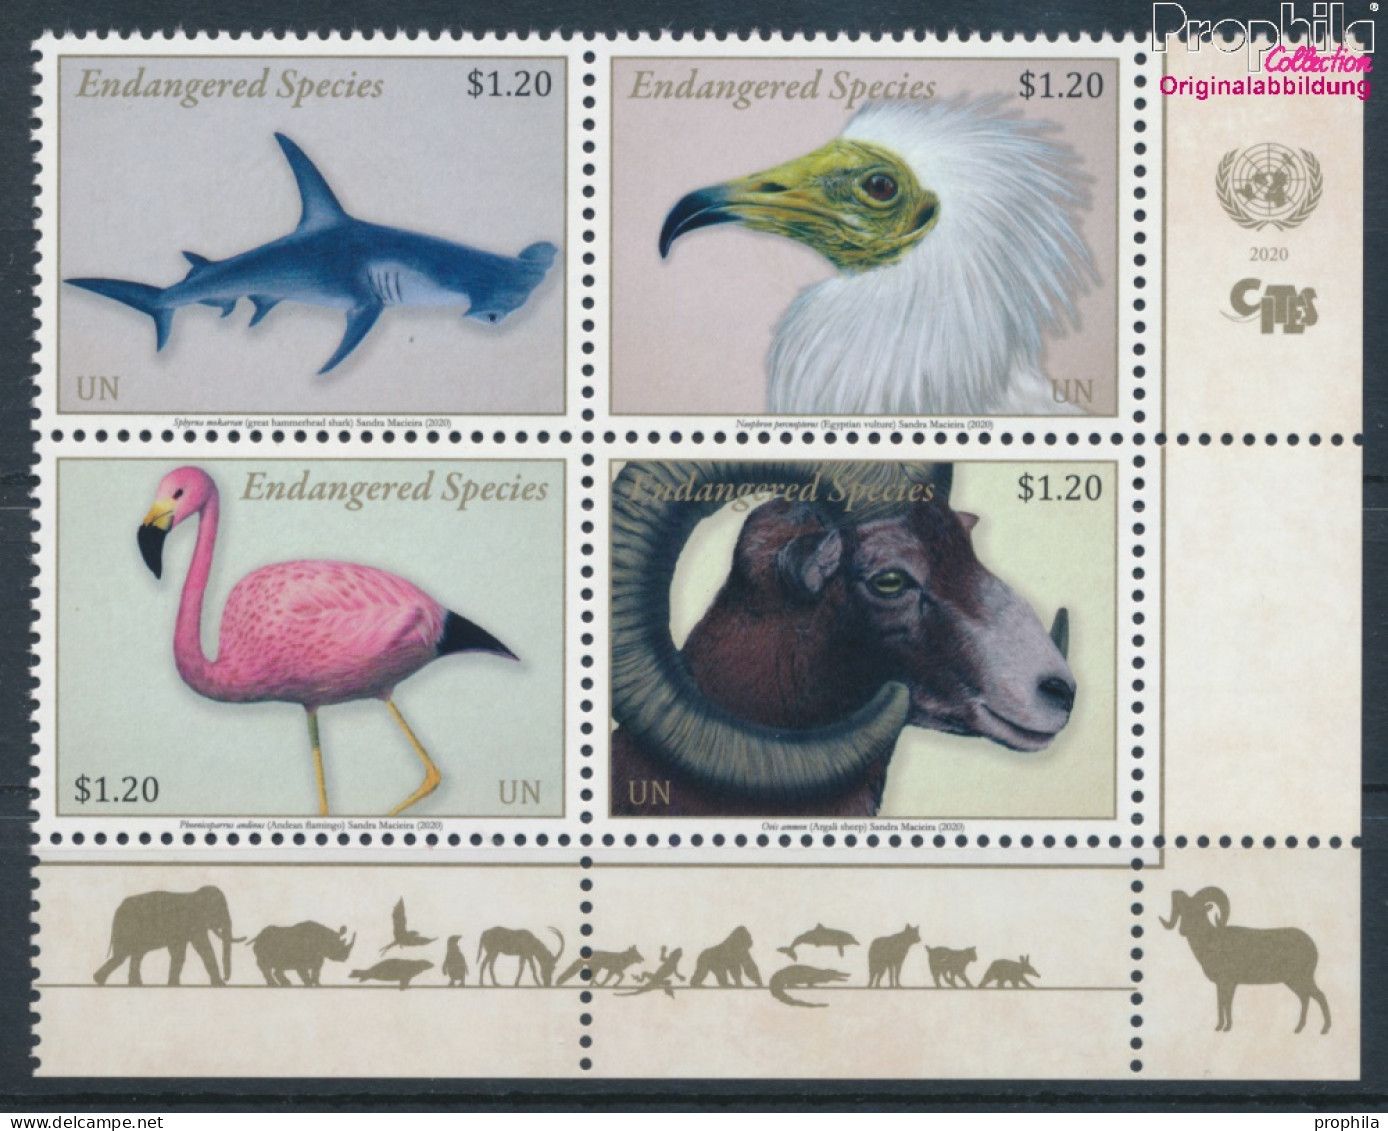 UNO - New York 1731-1734 Viererblock (kompl.Ausg.) Postfrisch 2020 Gefährdete Arten (10115331 - Unused Stamps